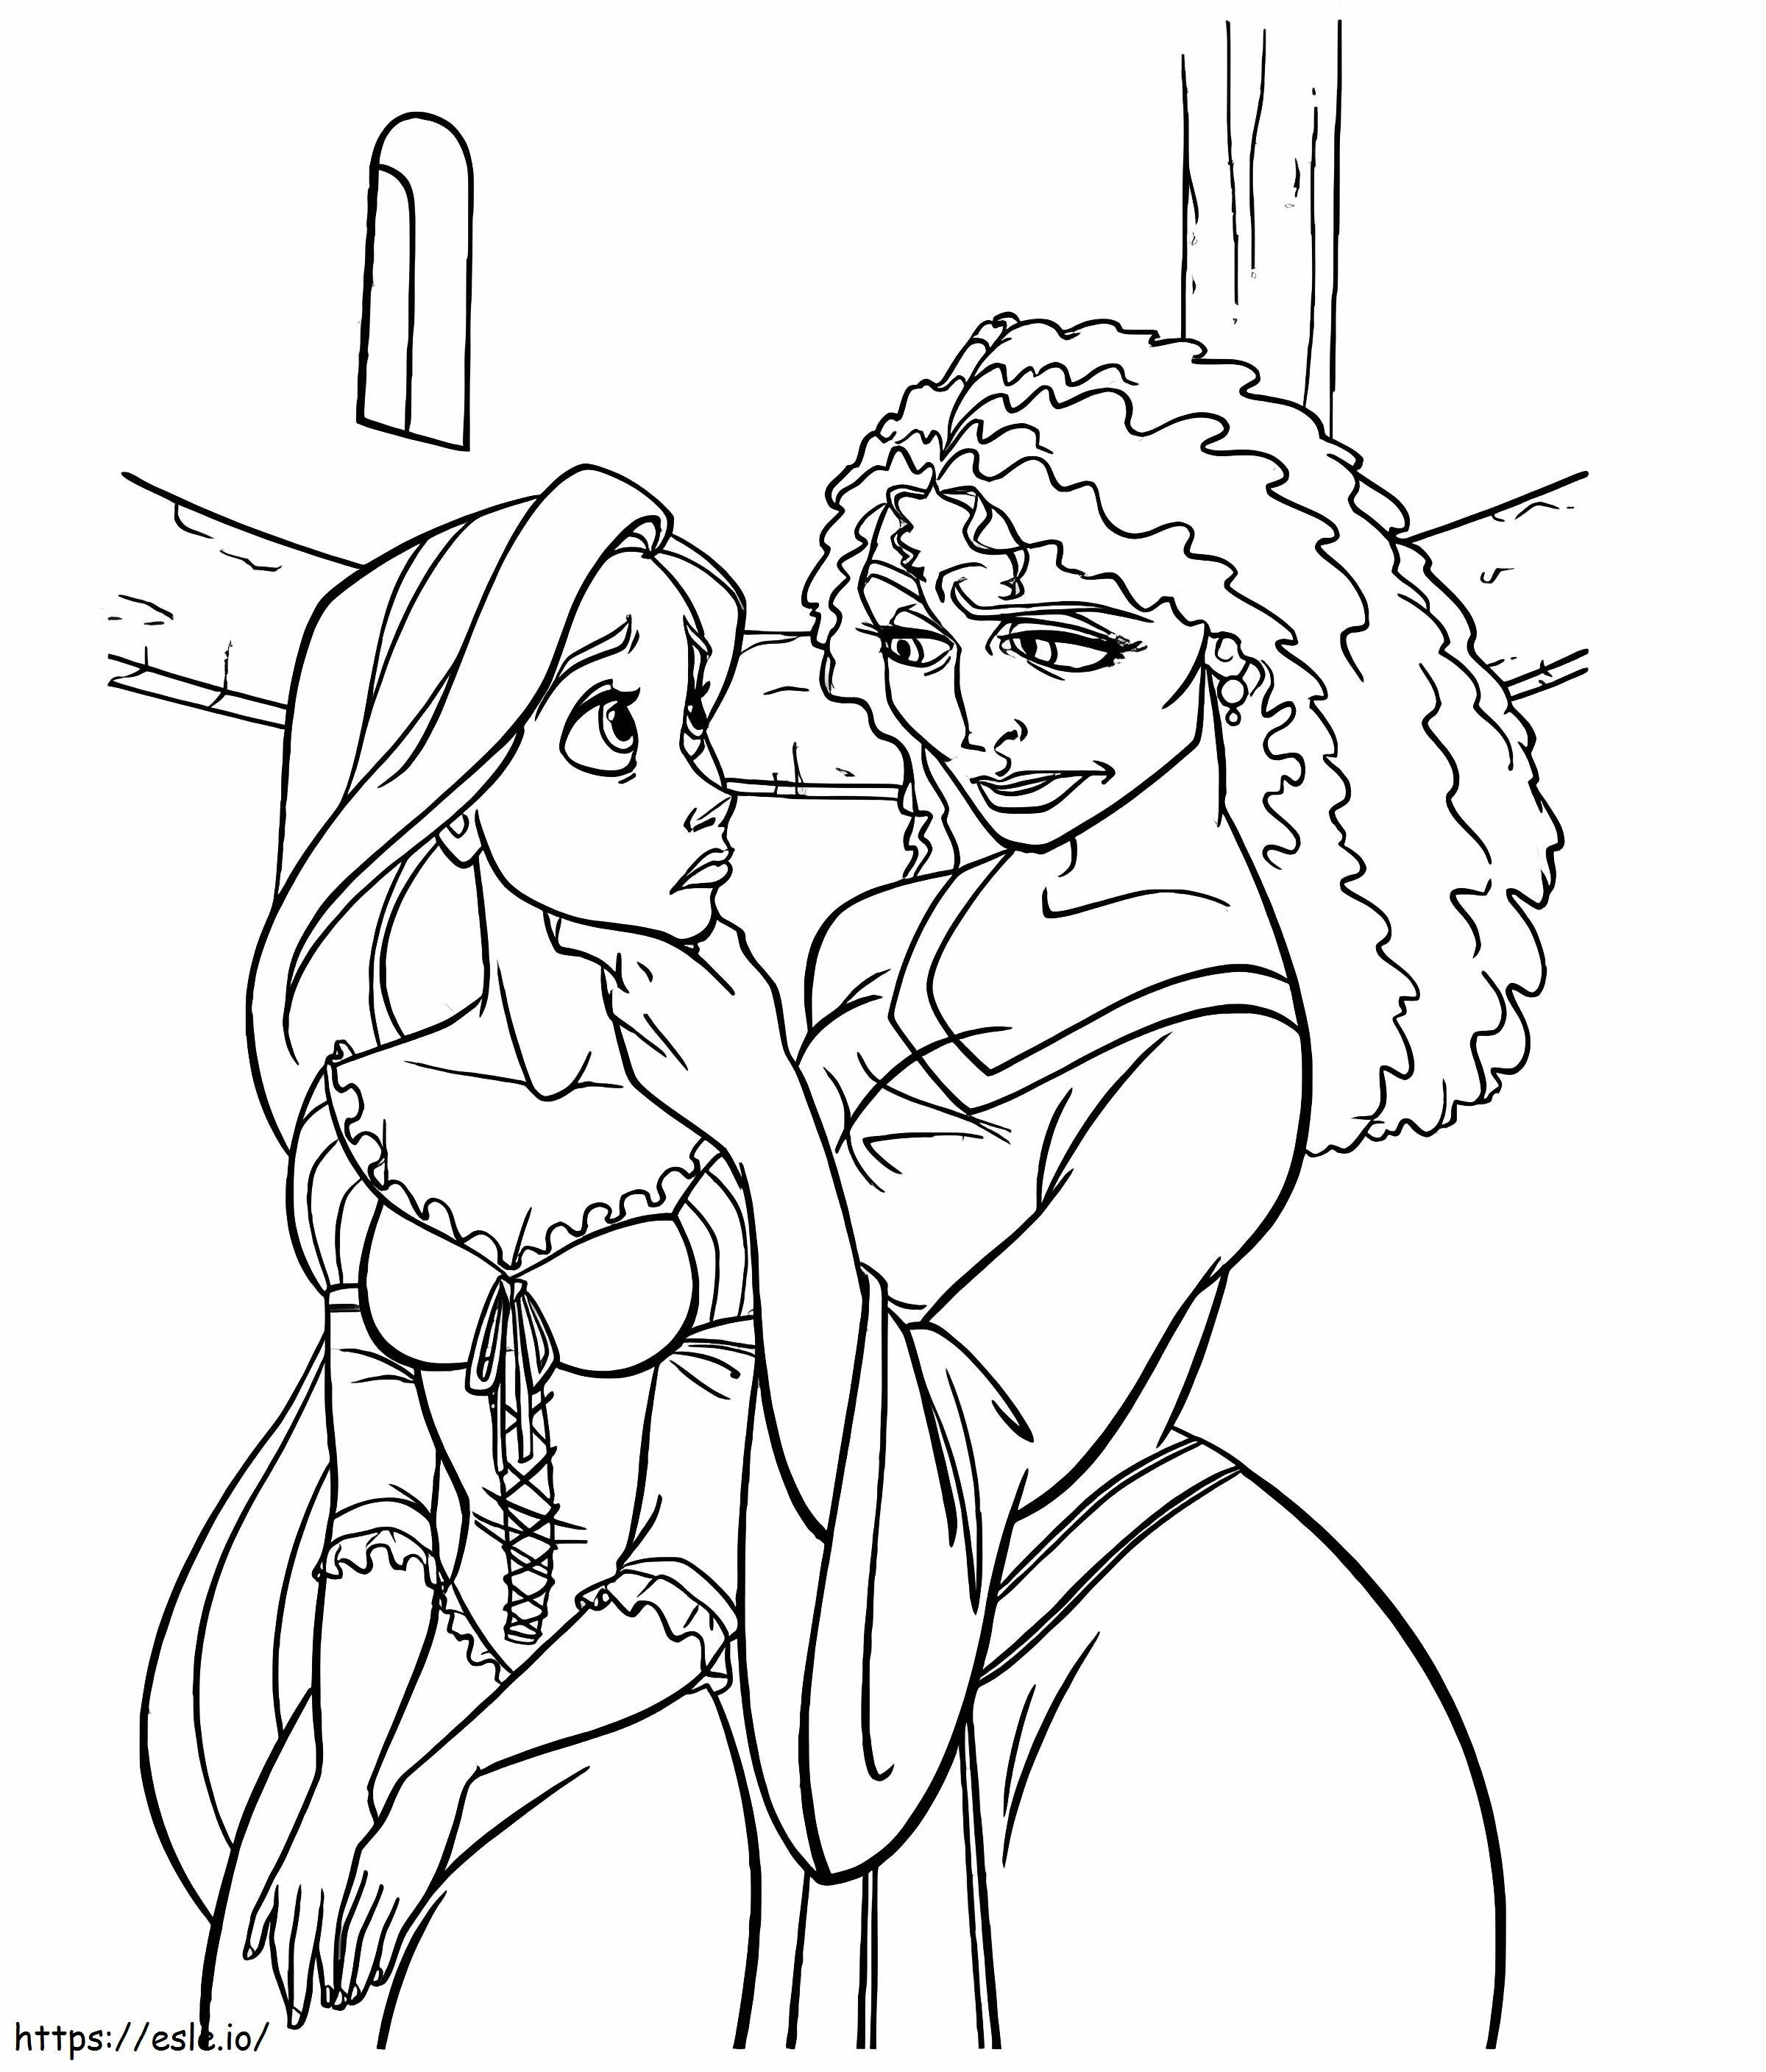 Mutter Gothel und Rapunzel ausmalbilder